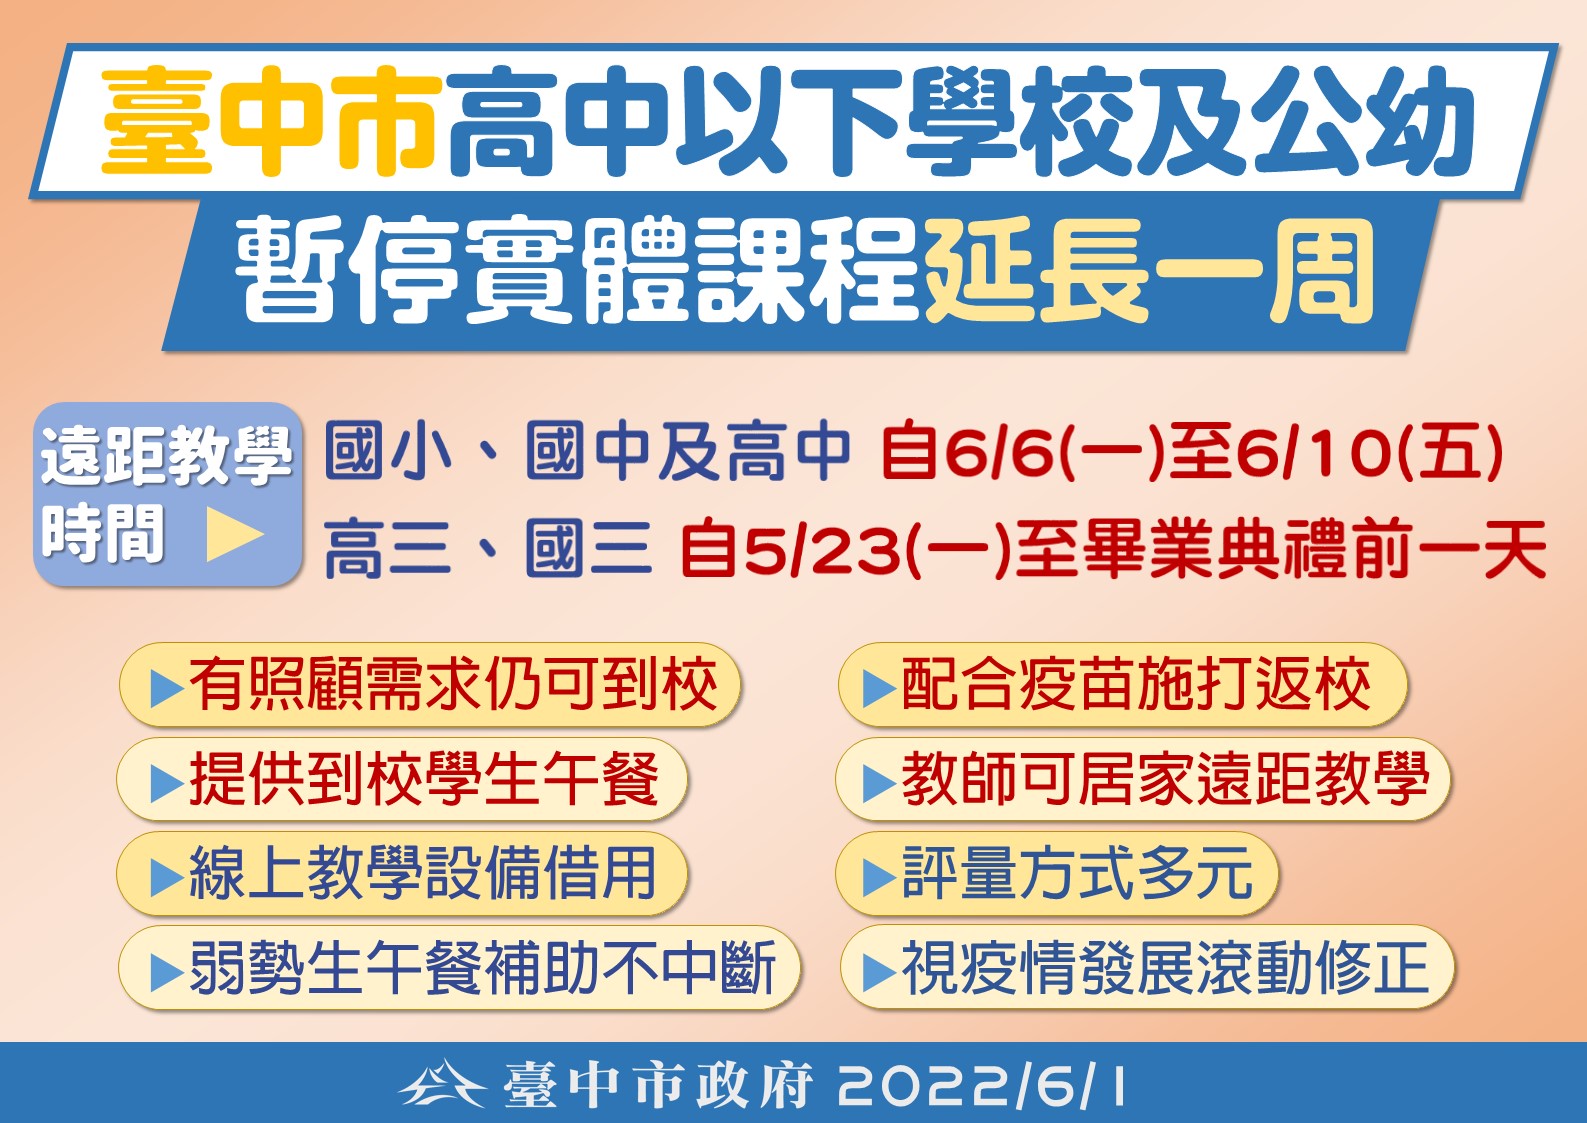 臺中市高級中等以下學校及公幼暫停實體課程延長一周(111.6.1)